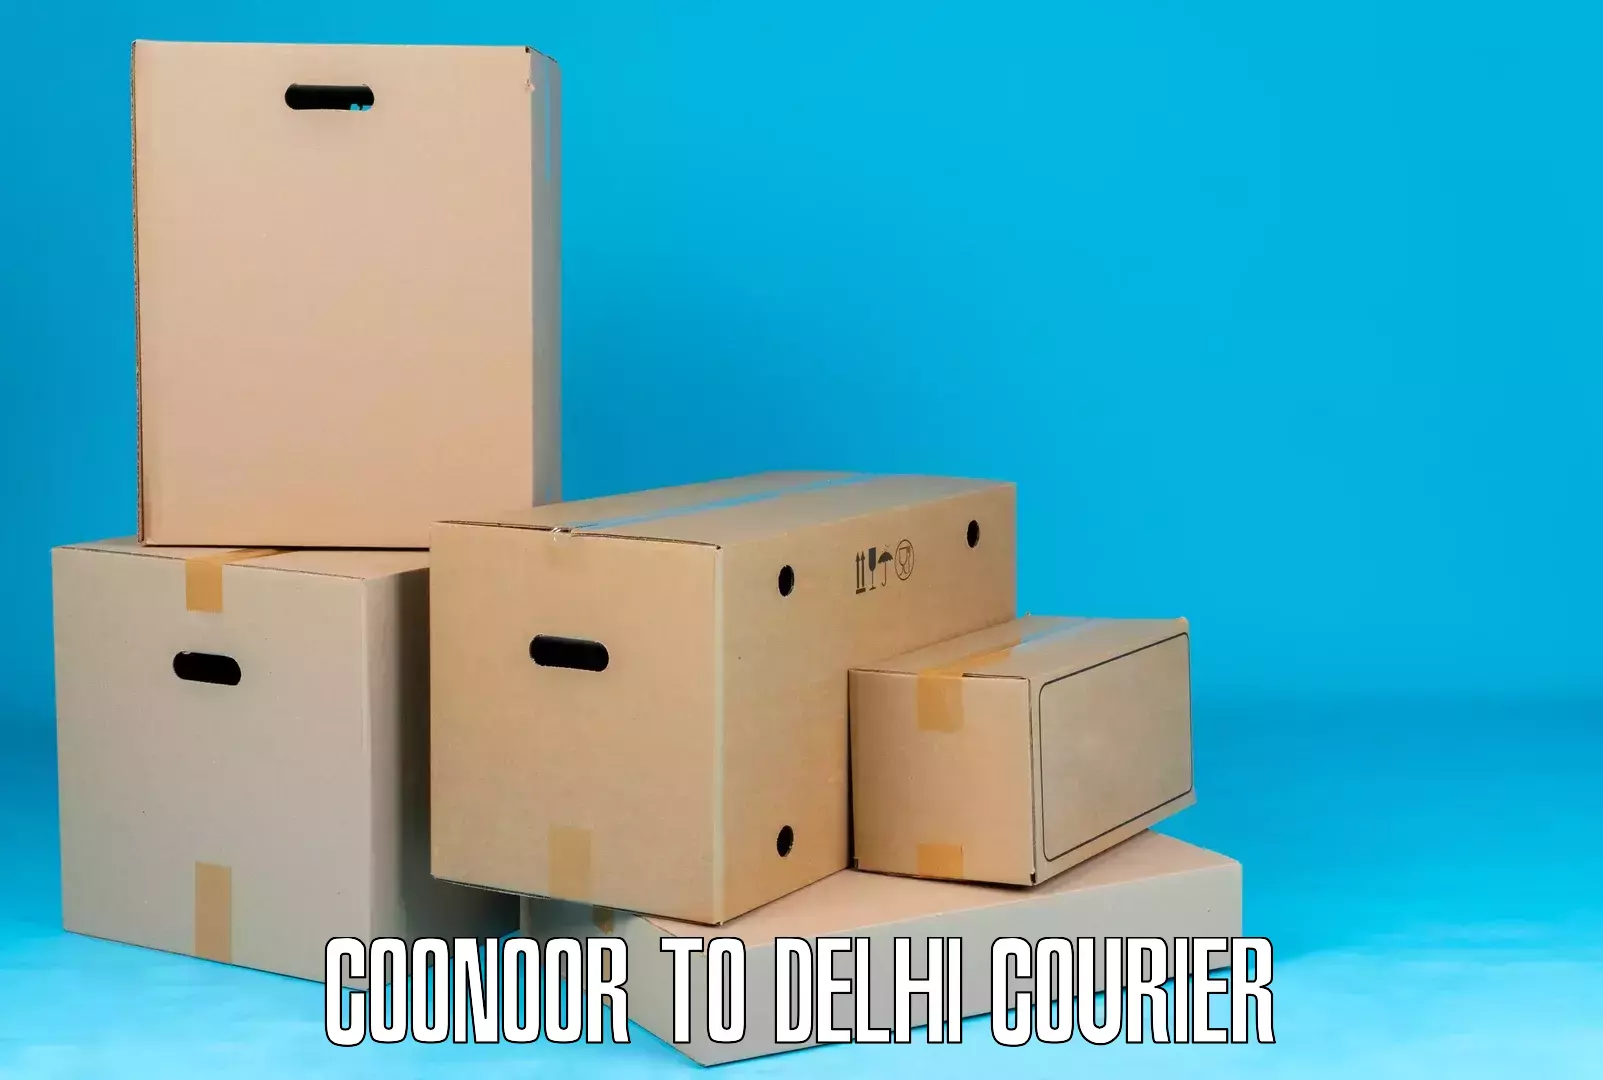 Pharmaceutical courier Coonoor to Jamia Hamdard New Delhi